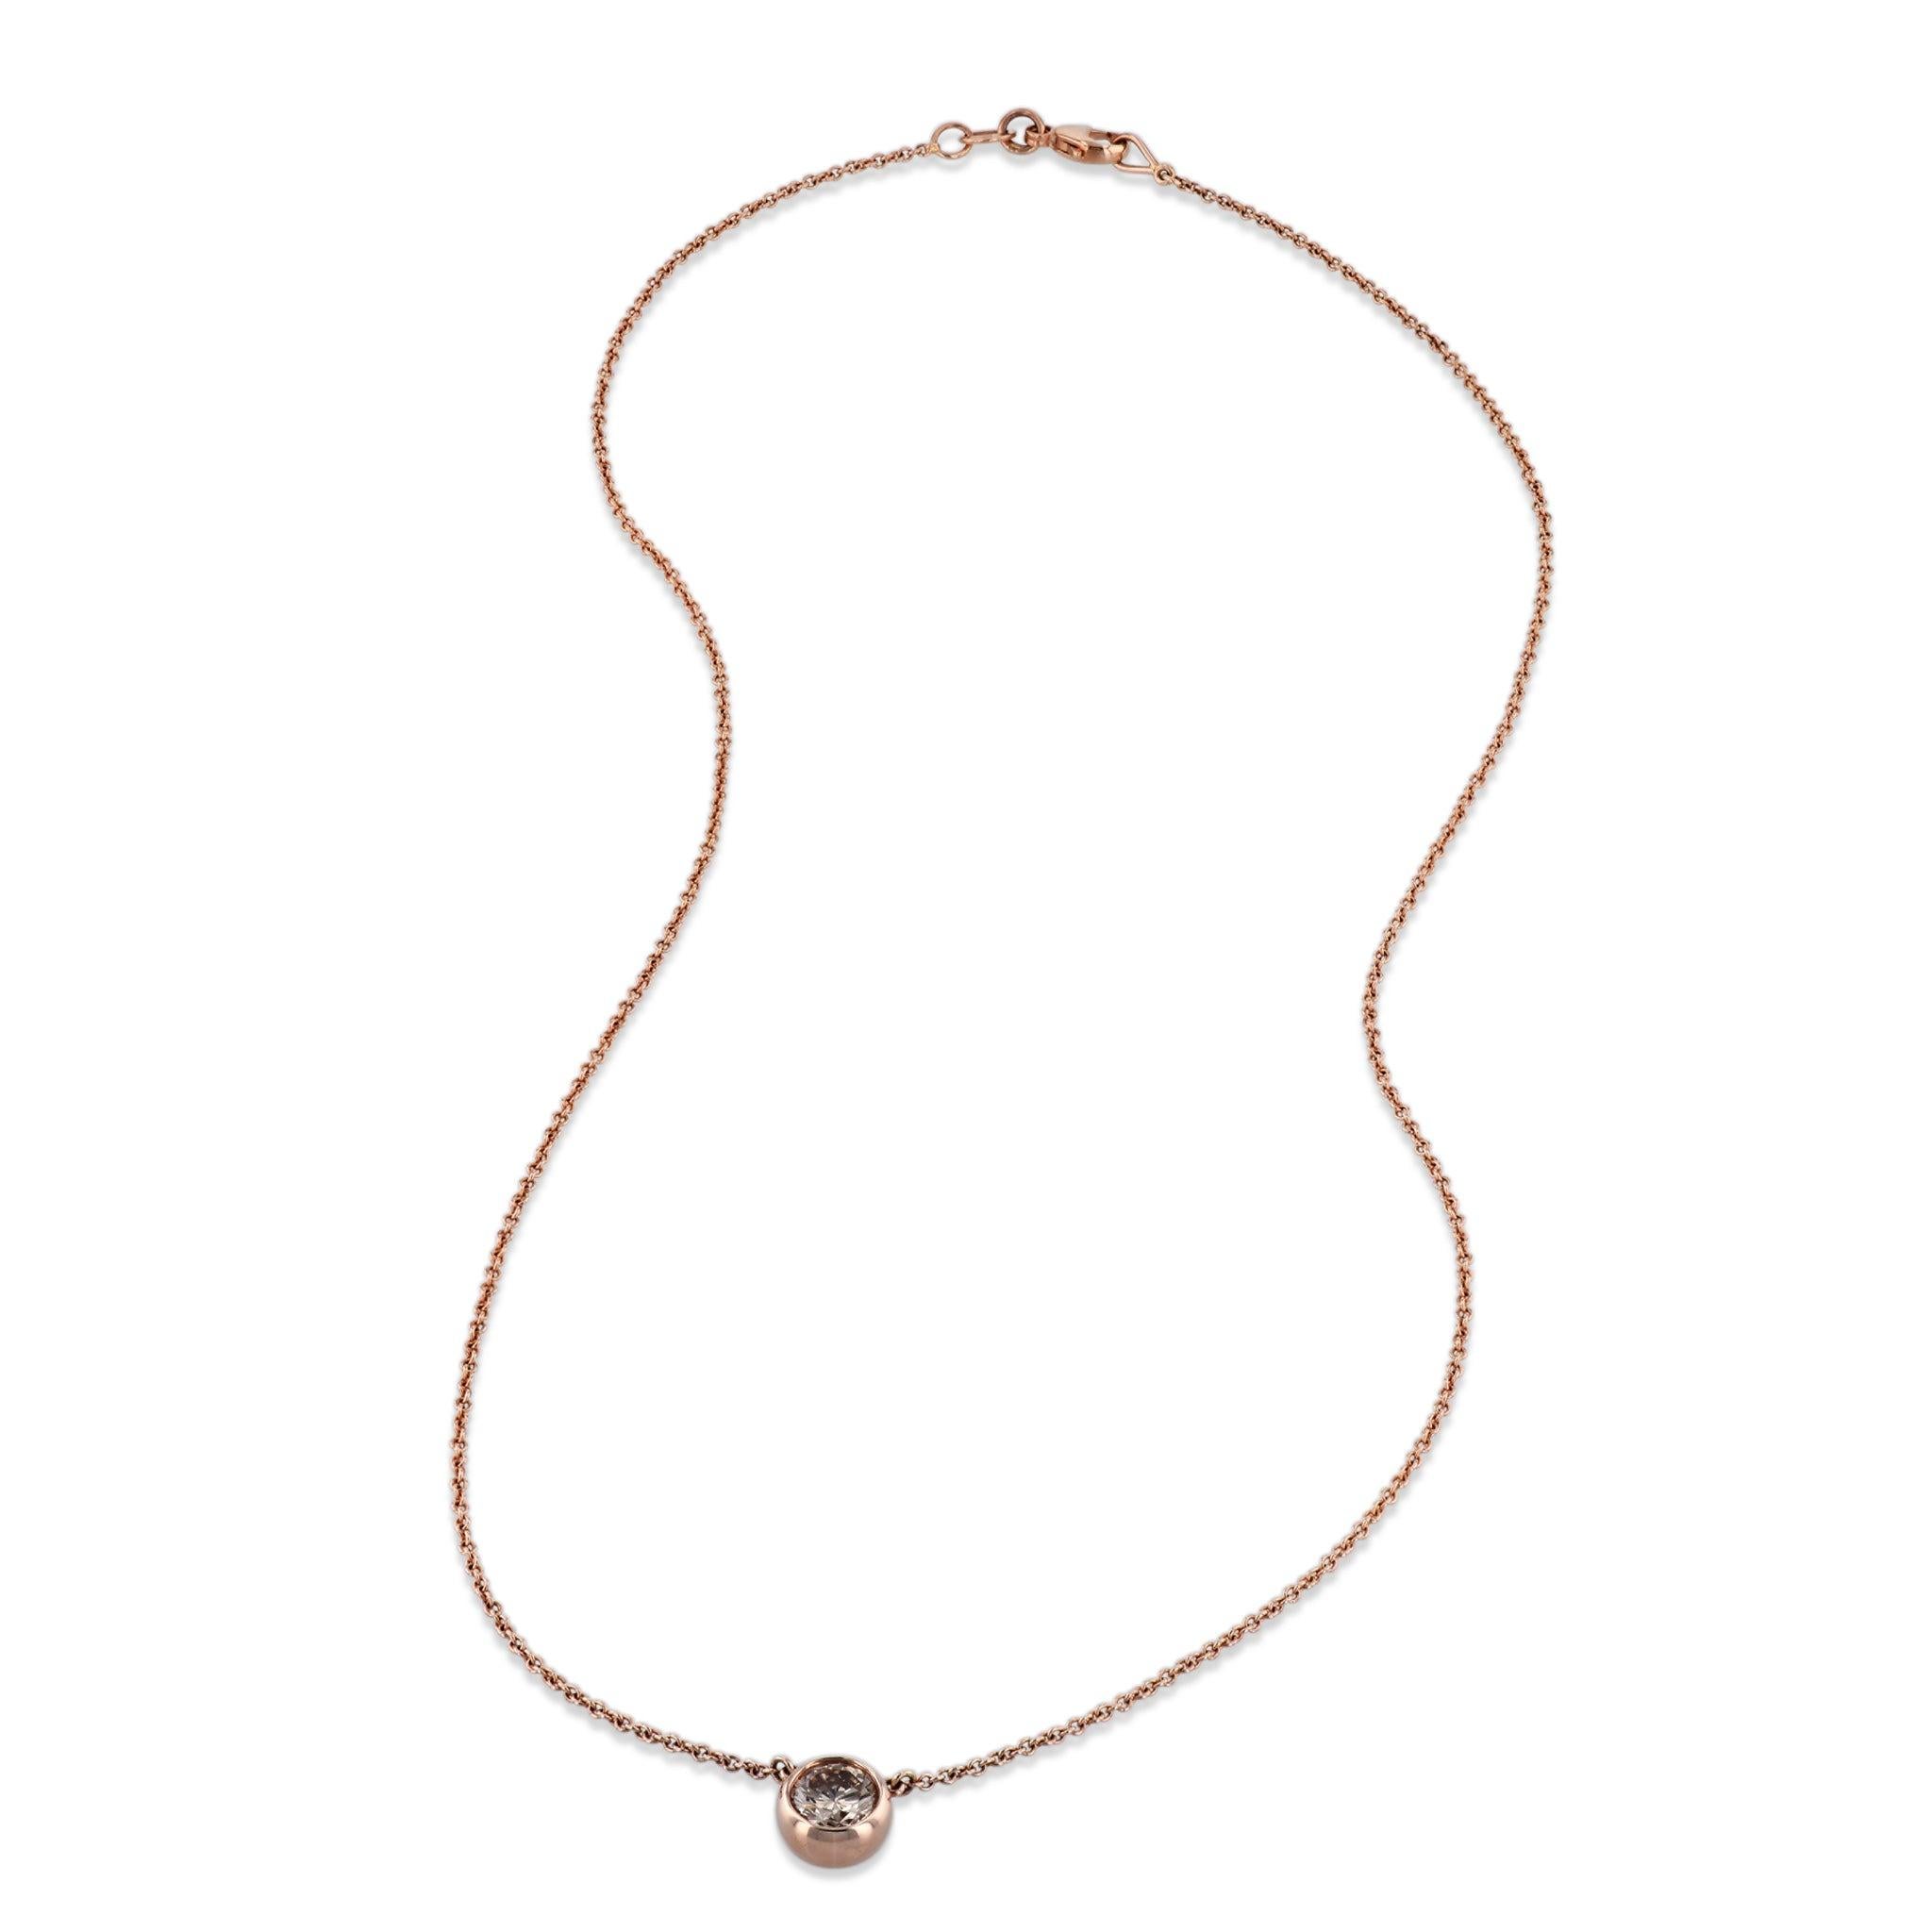 Montrez votre amour intemporel avec ce collier à pendentif en or rose et diamants de Cinnamon ! Confectionné avec un diamant brun clair serti en chaton, ce collier est absolument magnifique. La chaîne en or rose 14kt. mesure 18'' et est fabriquée à